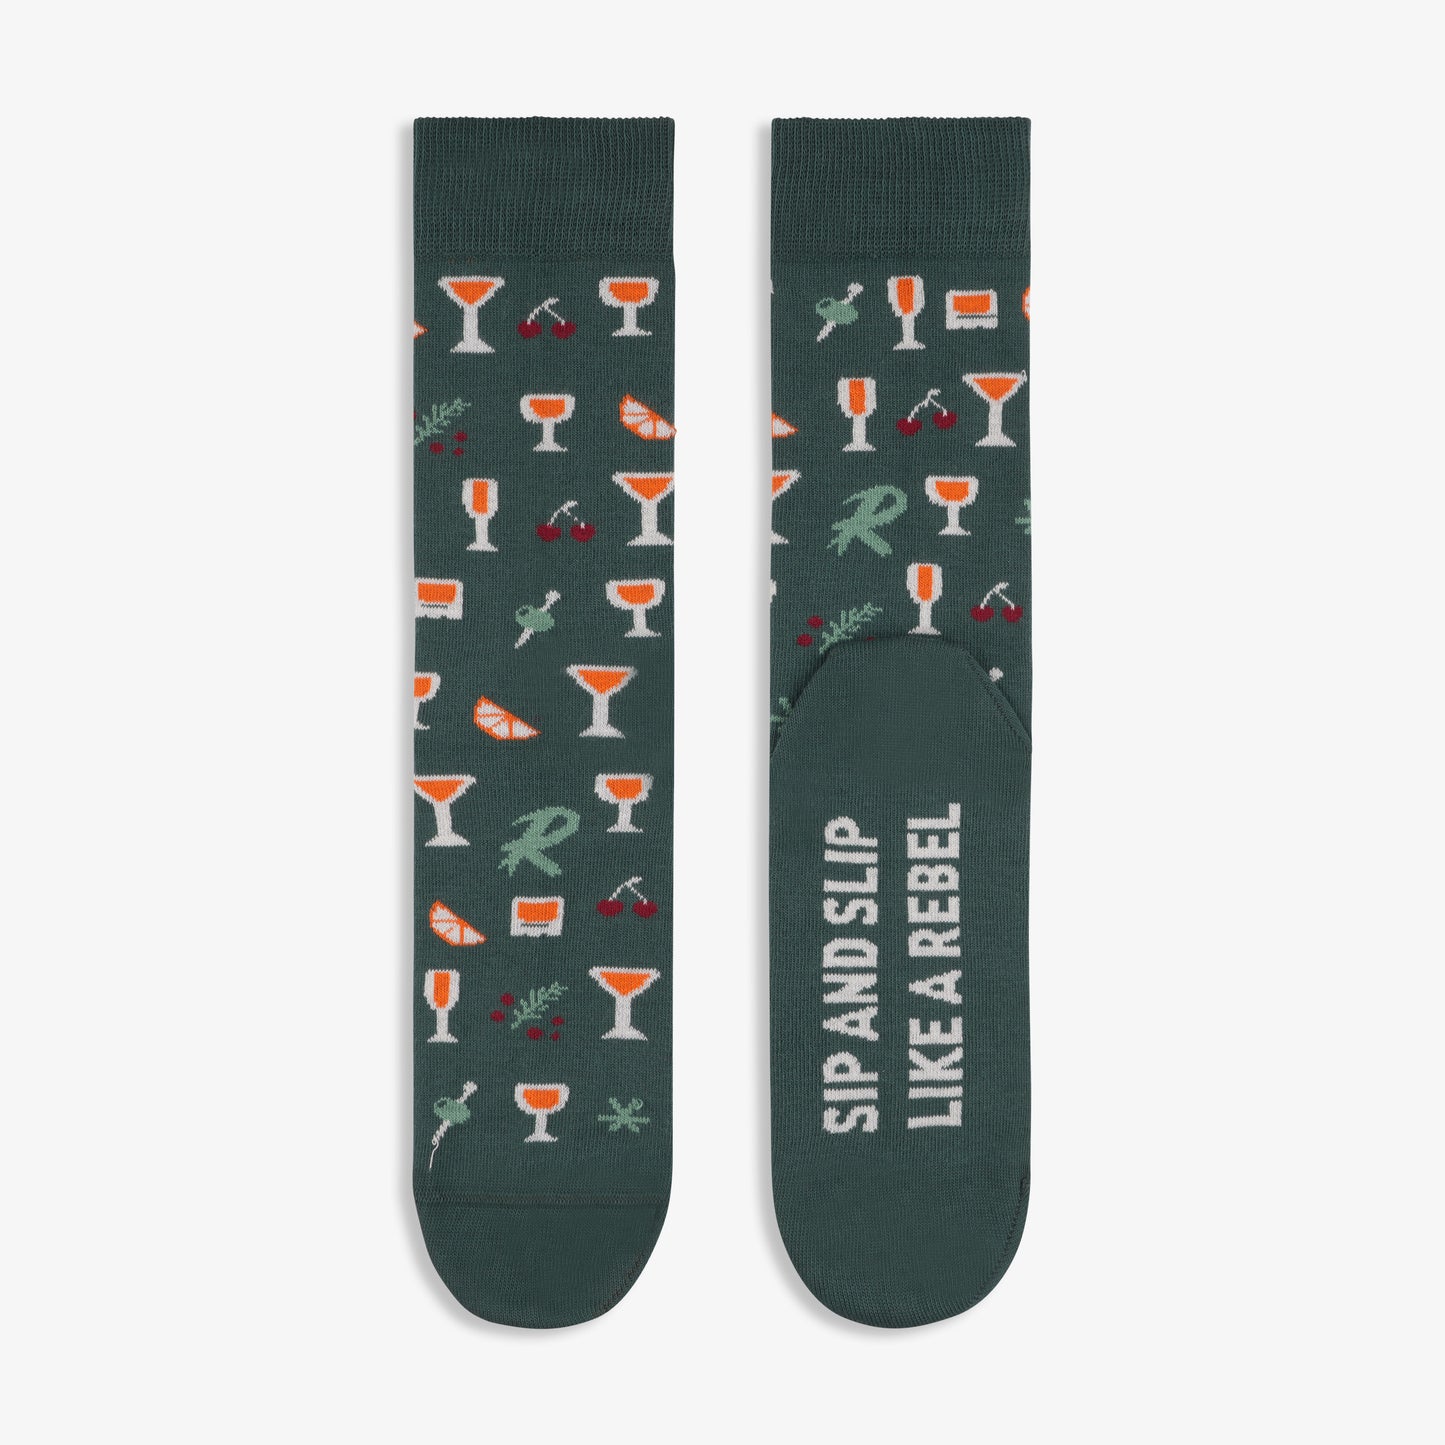 REBELS 0.0% x PAAR Socks - Gift Set